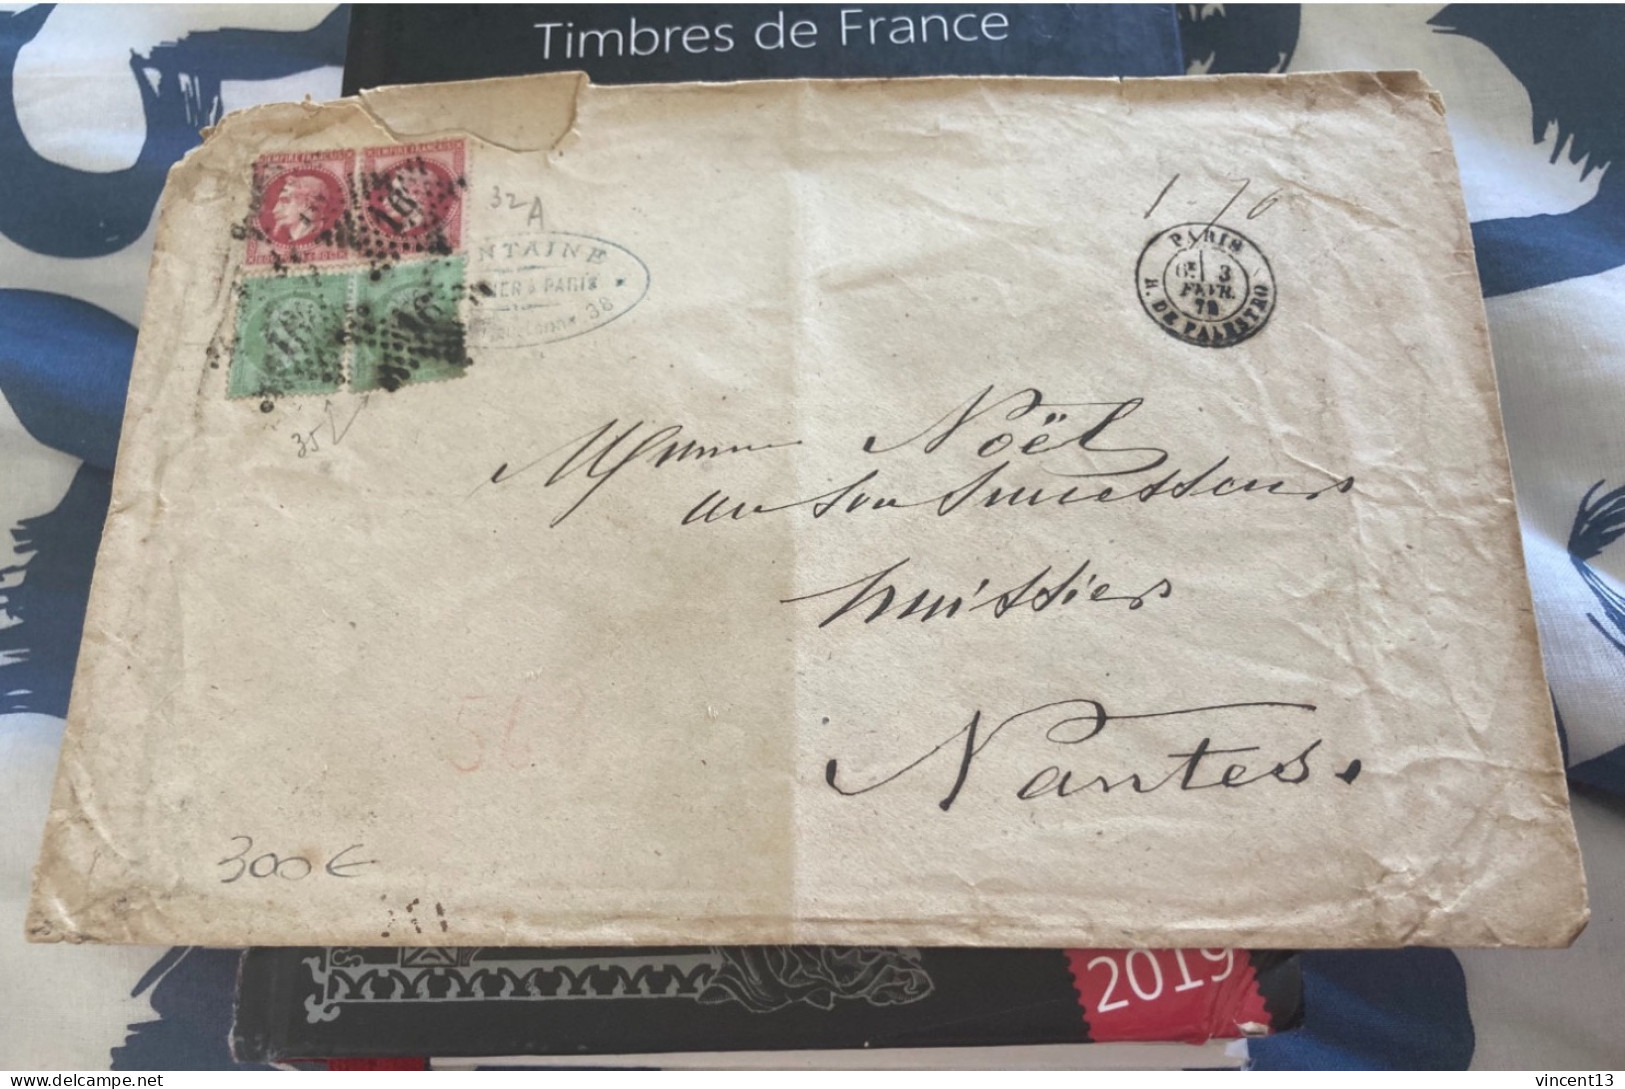 France Marcophilie Rare Lettre  Classique Napoleon No 35 Et 32A  1872 - 1863-1870 Napoleon III With Laurels